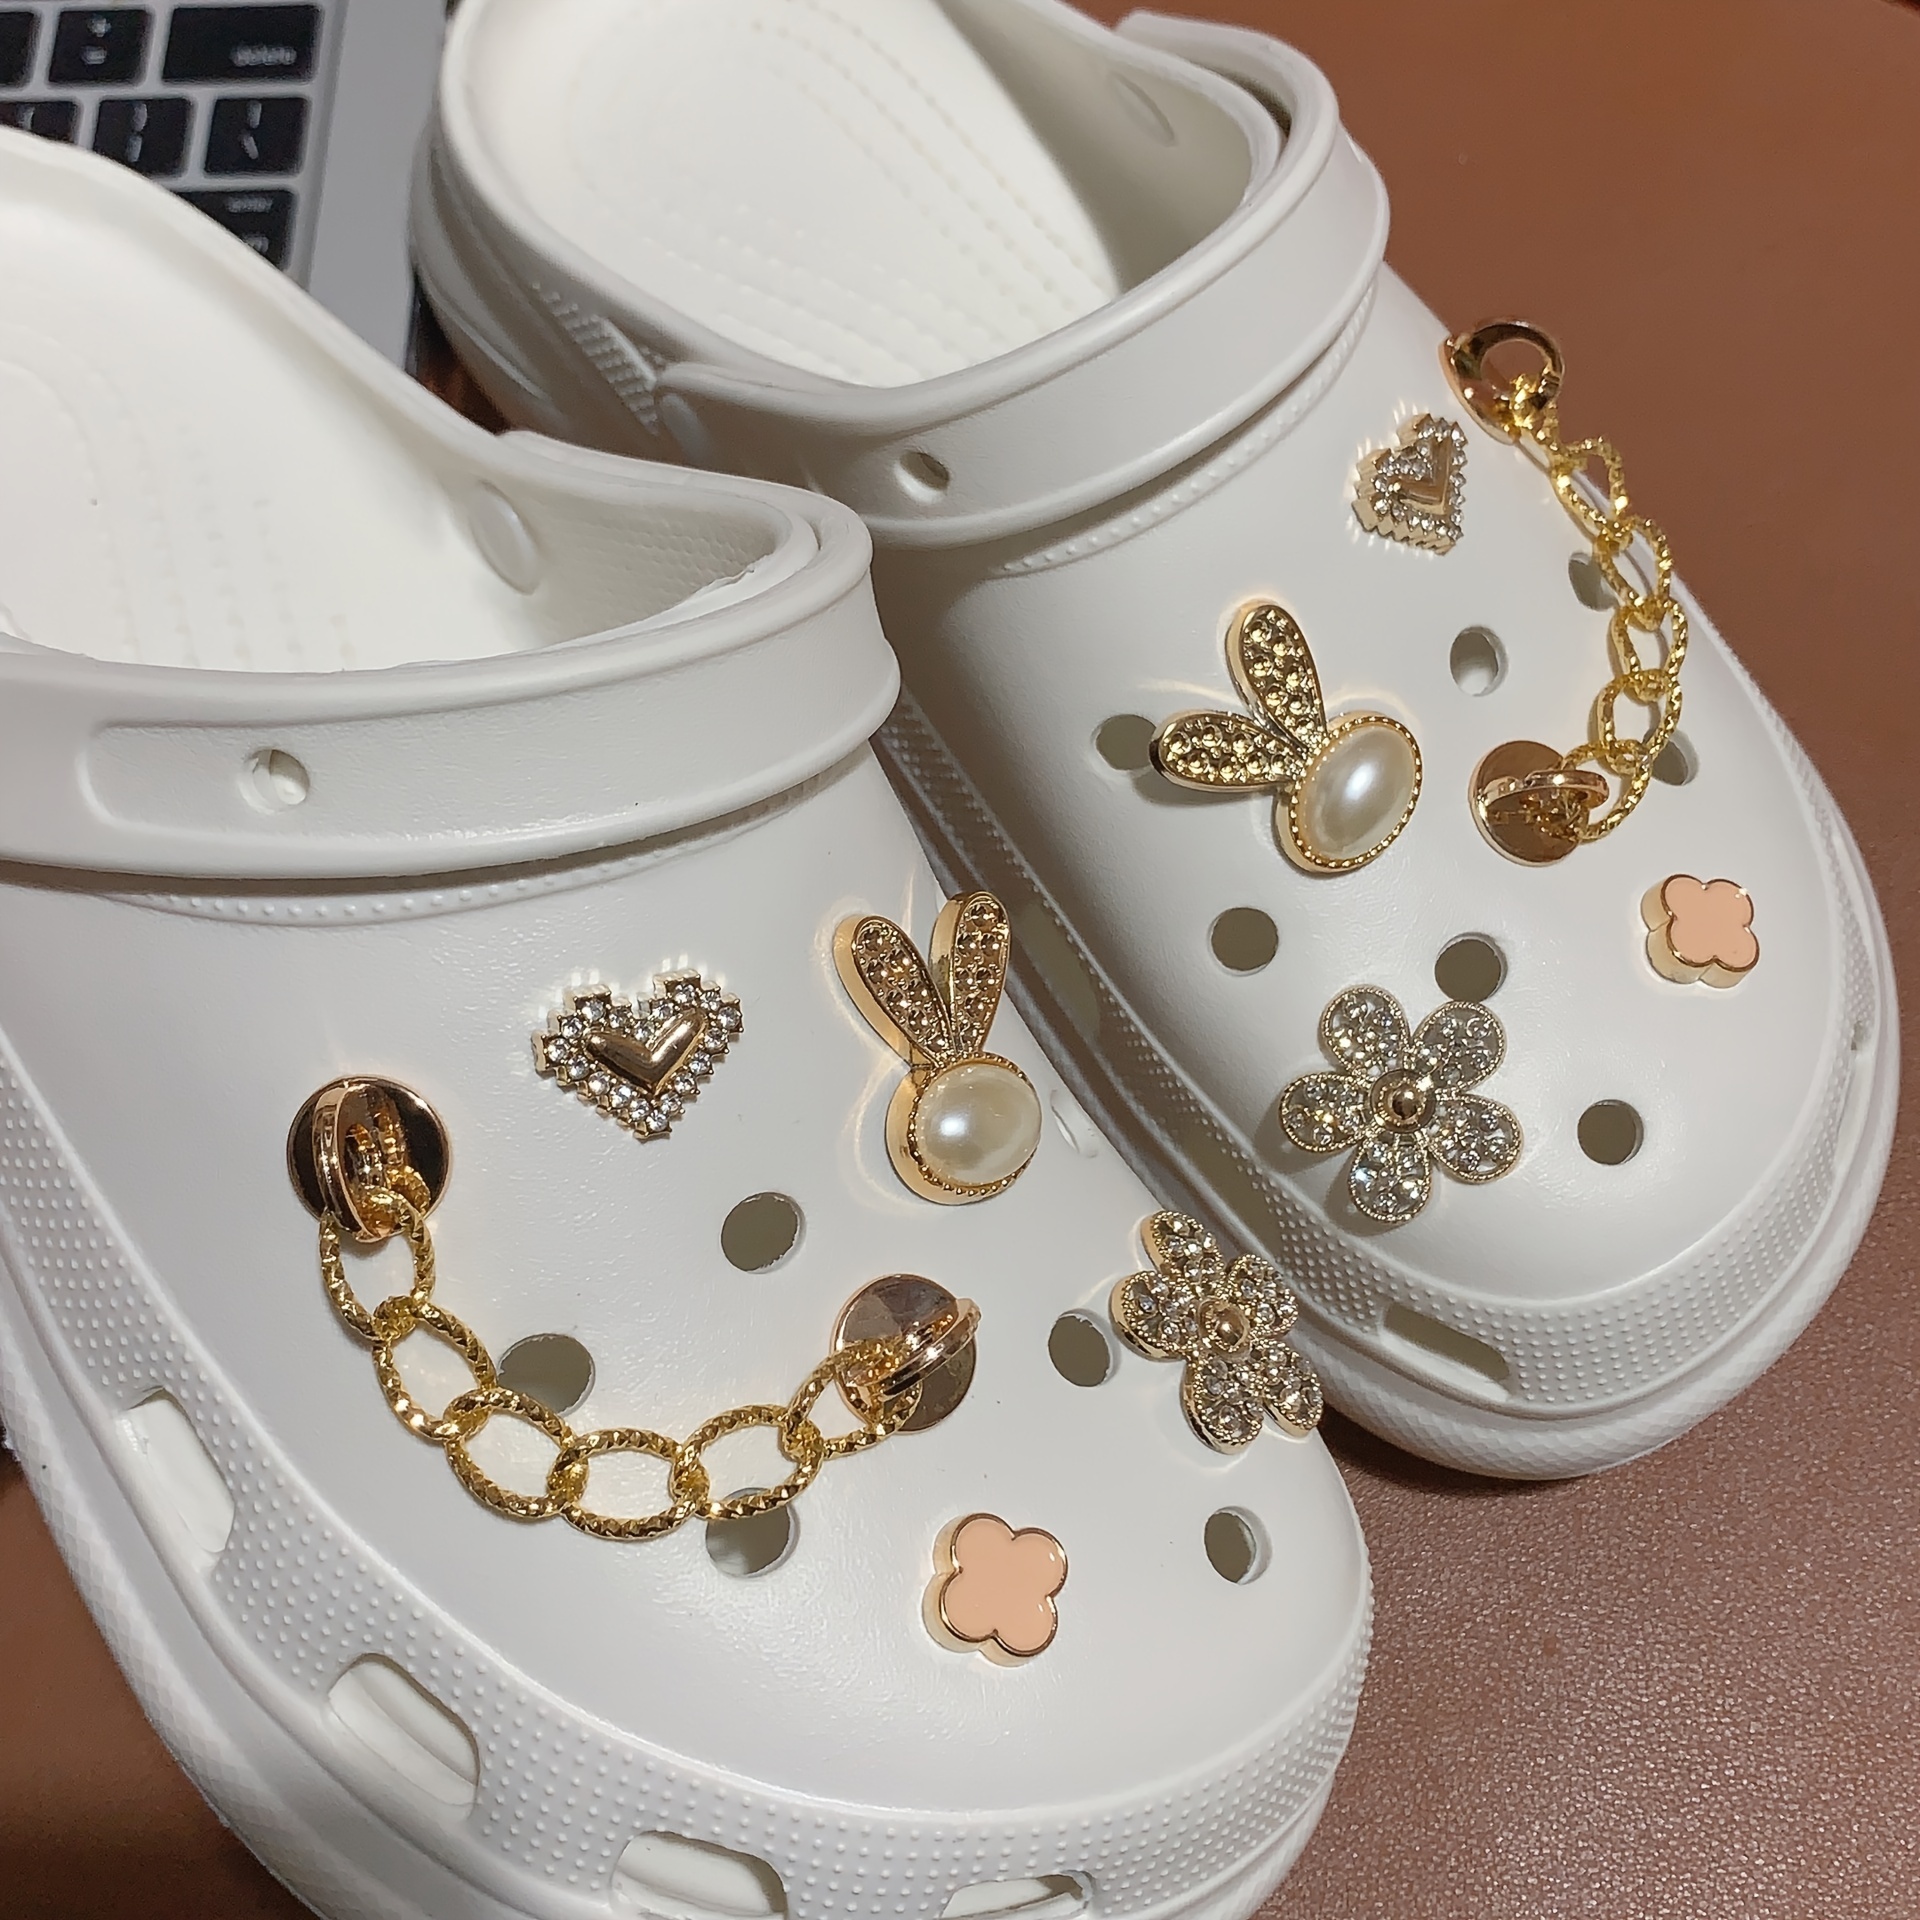  Bling Shoe Charms for Women Girls,Golden Bling Croc